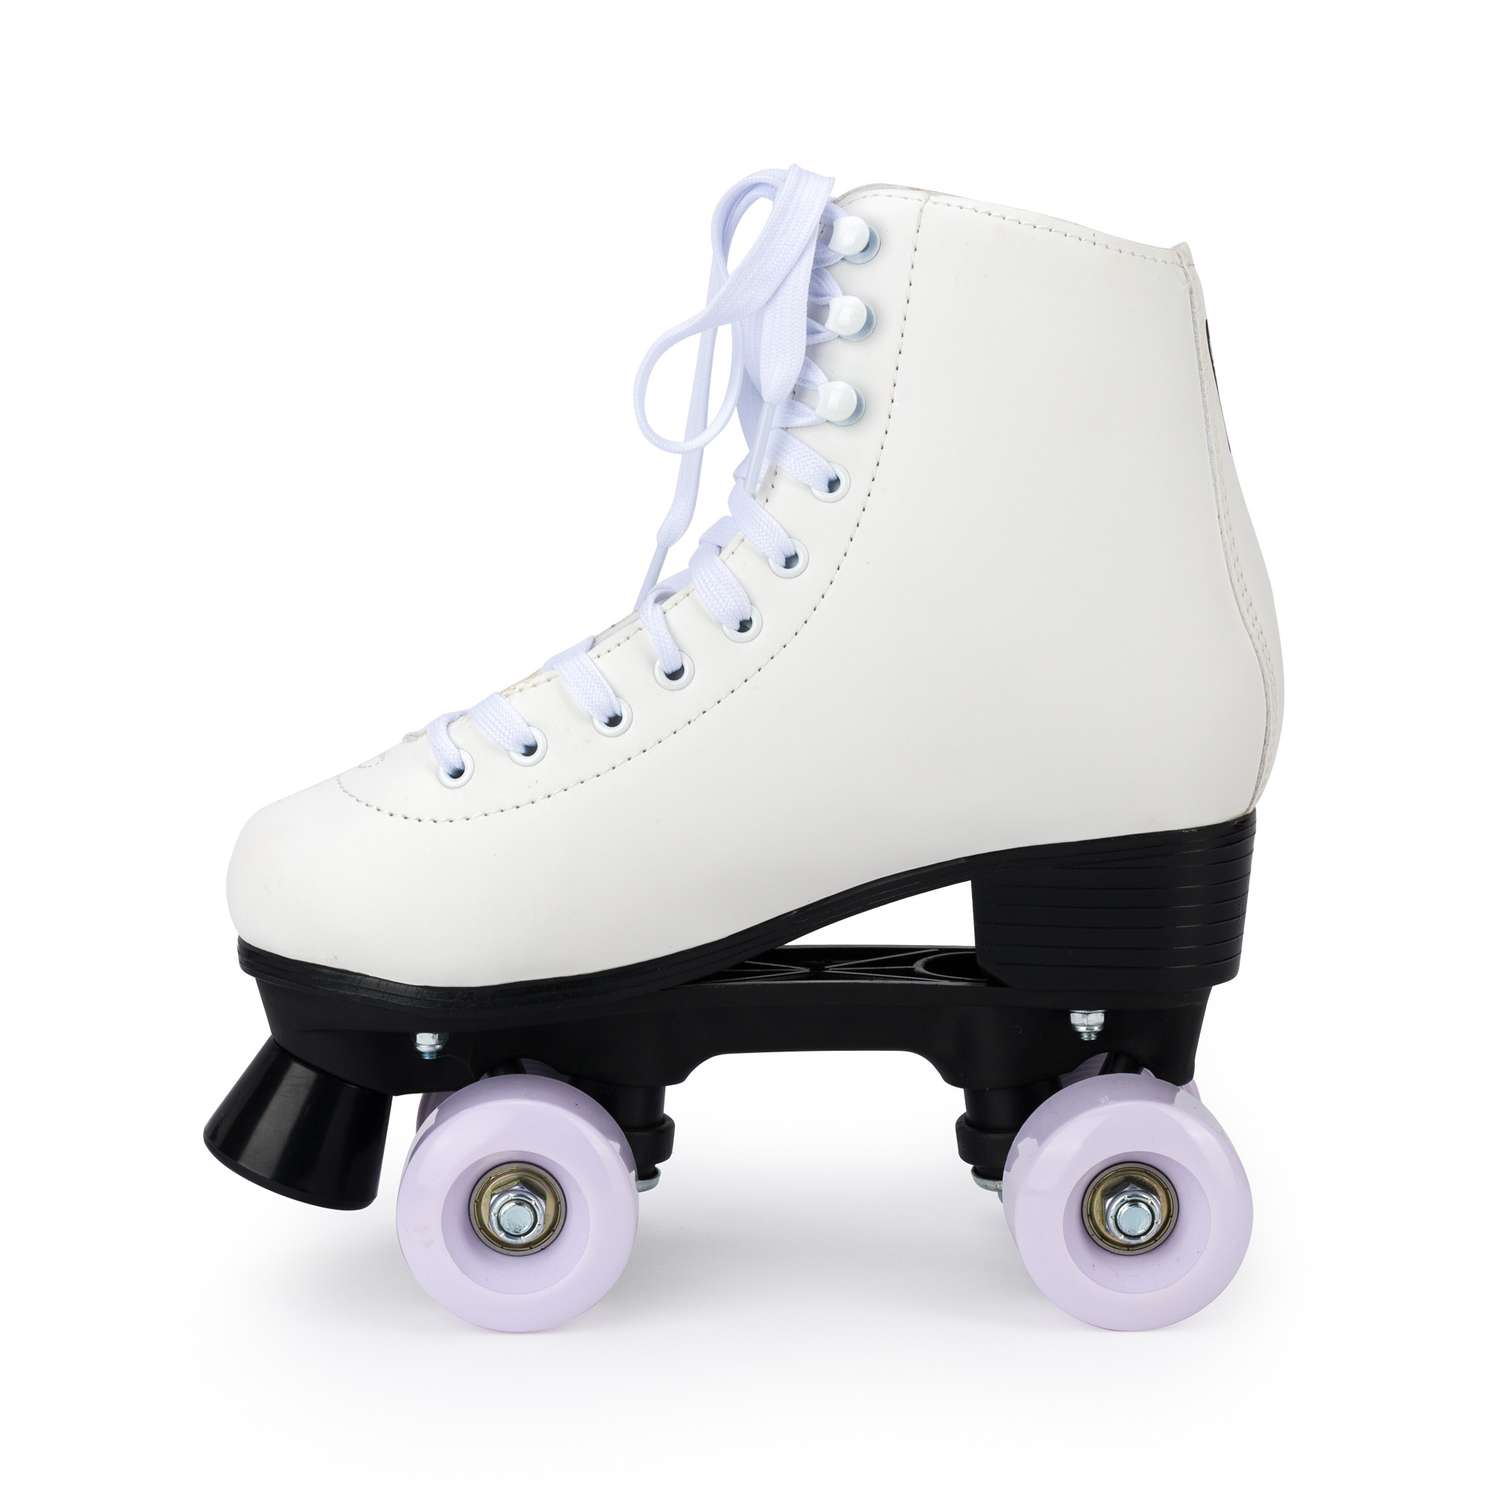 Роликовые коньки SXRide Roller skate YXSKT04WPUR40 белые с фиолетово-розовым орнаментом размер 40 - фото 3